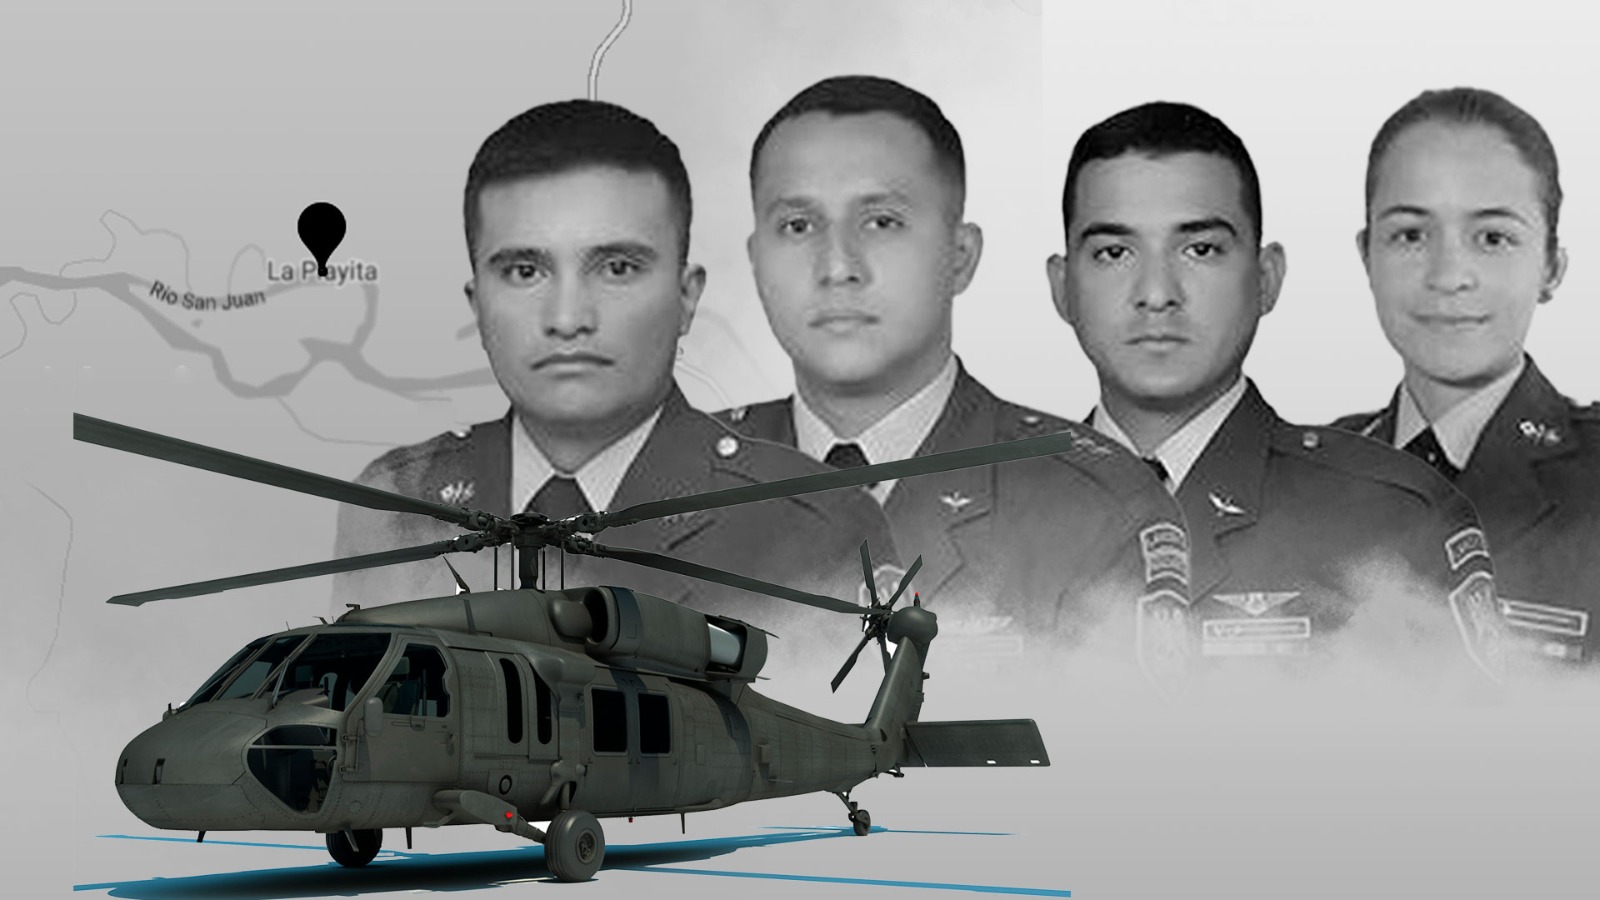 Fallecidos en accidente de helicóptero del Ejército. Jesús Áviles - Infobae